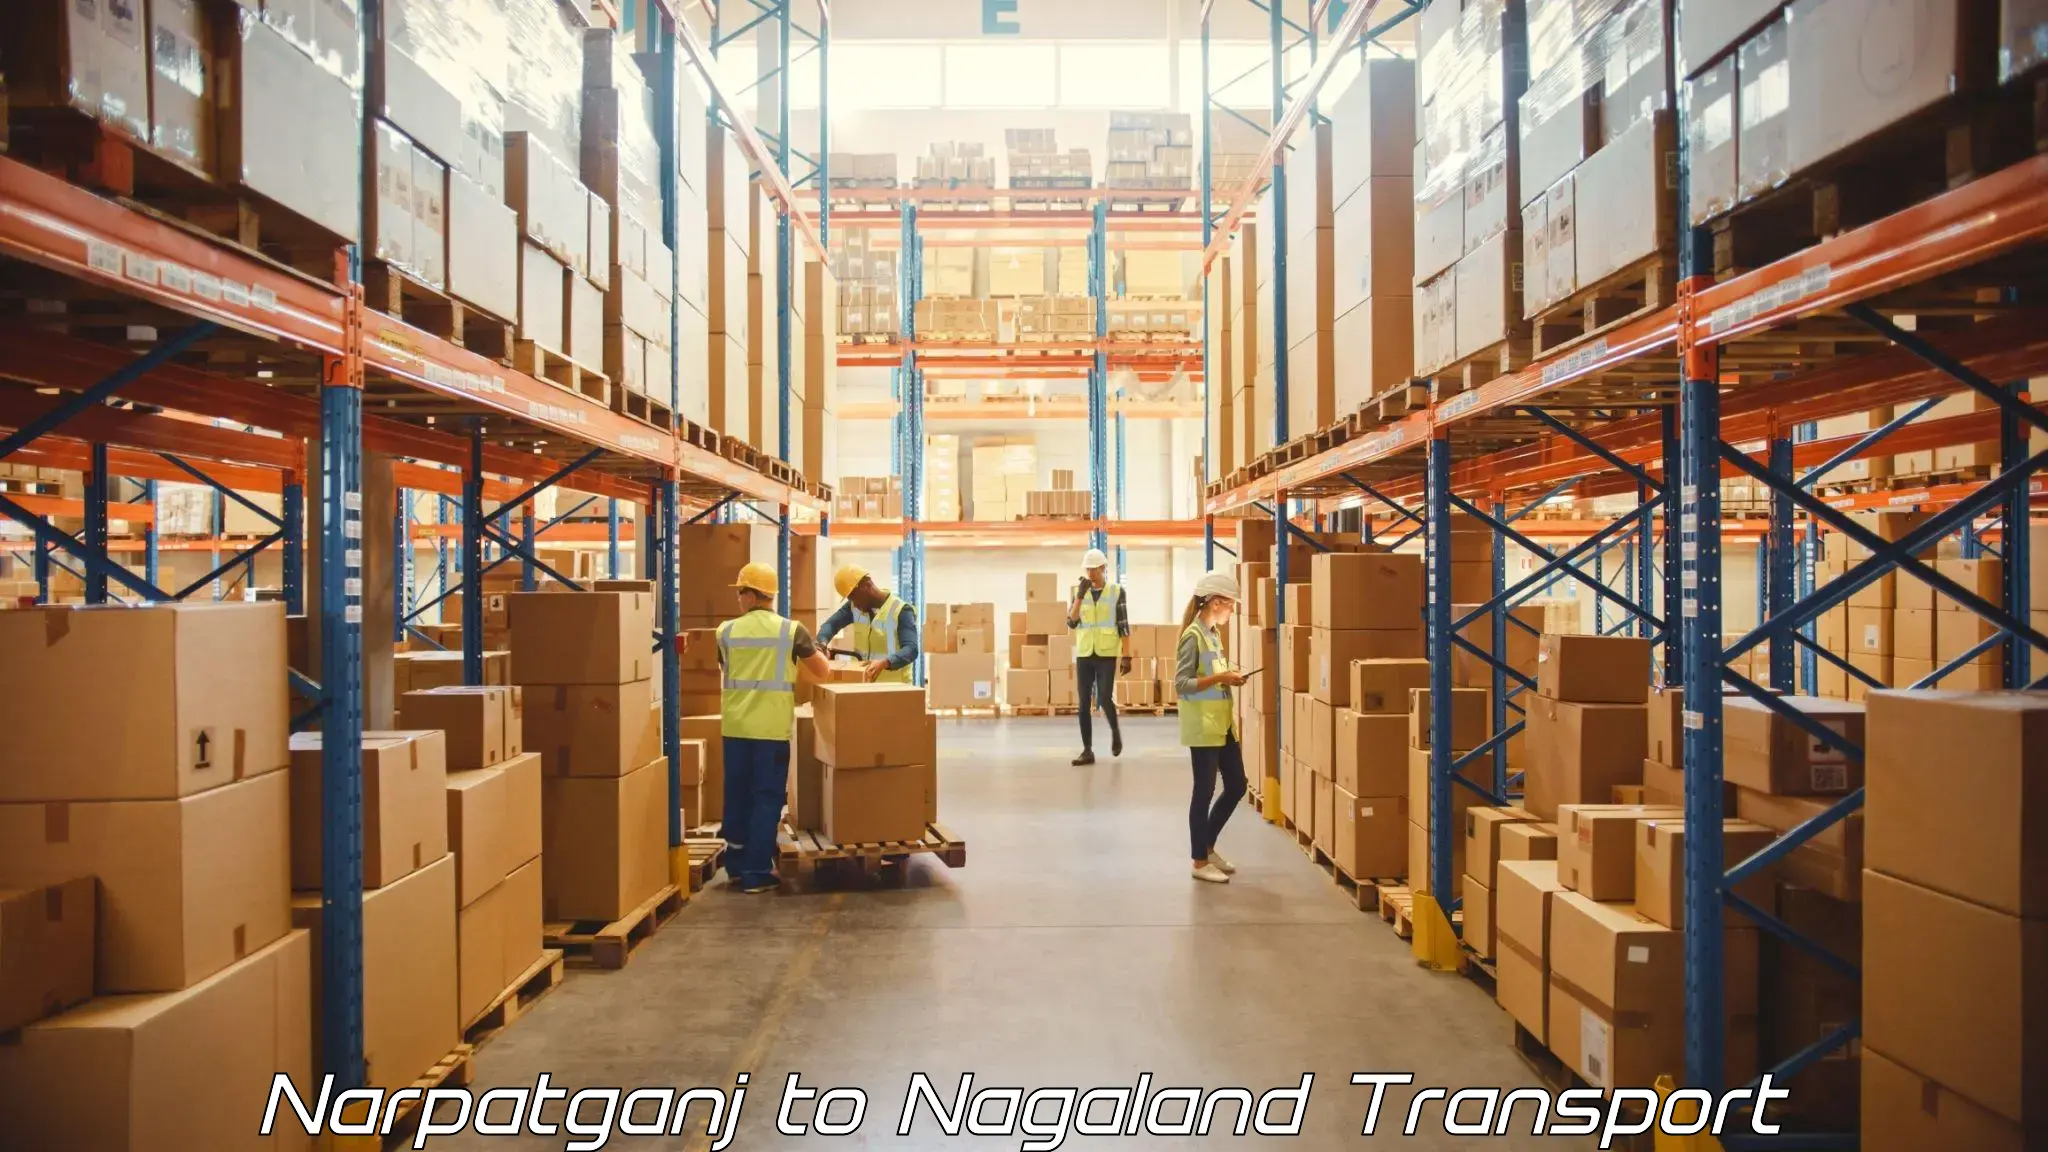 Commercial transport service Narpatganj to NIT Nagaland